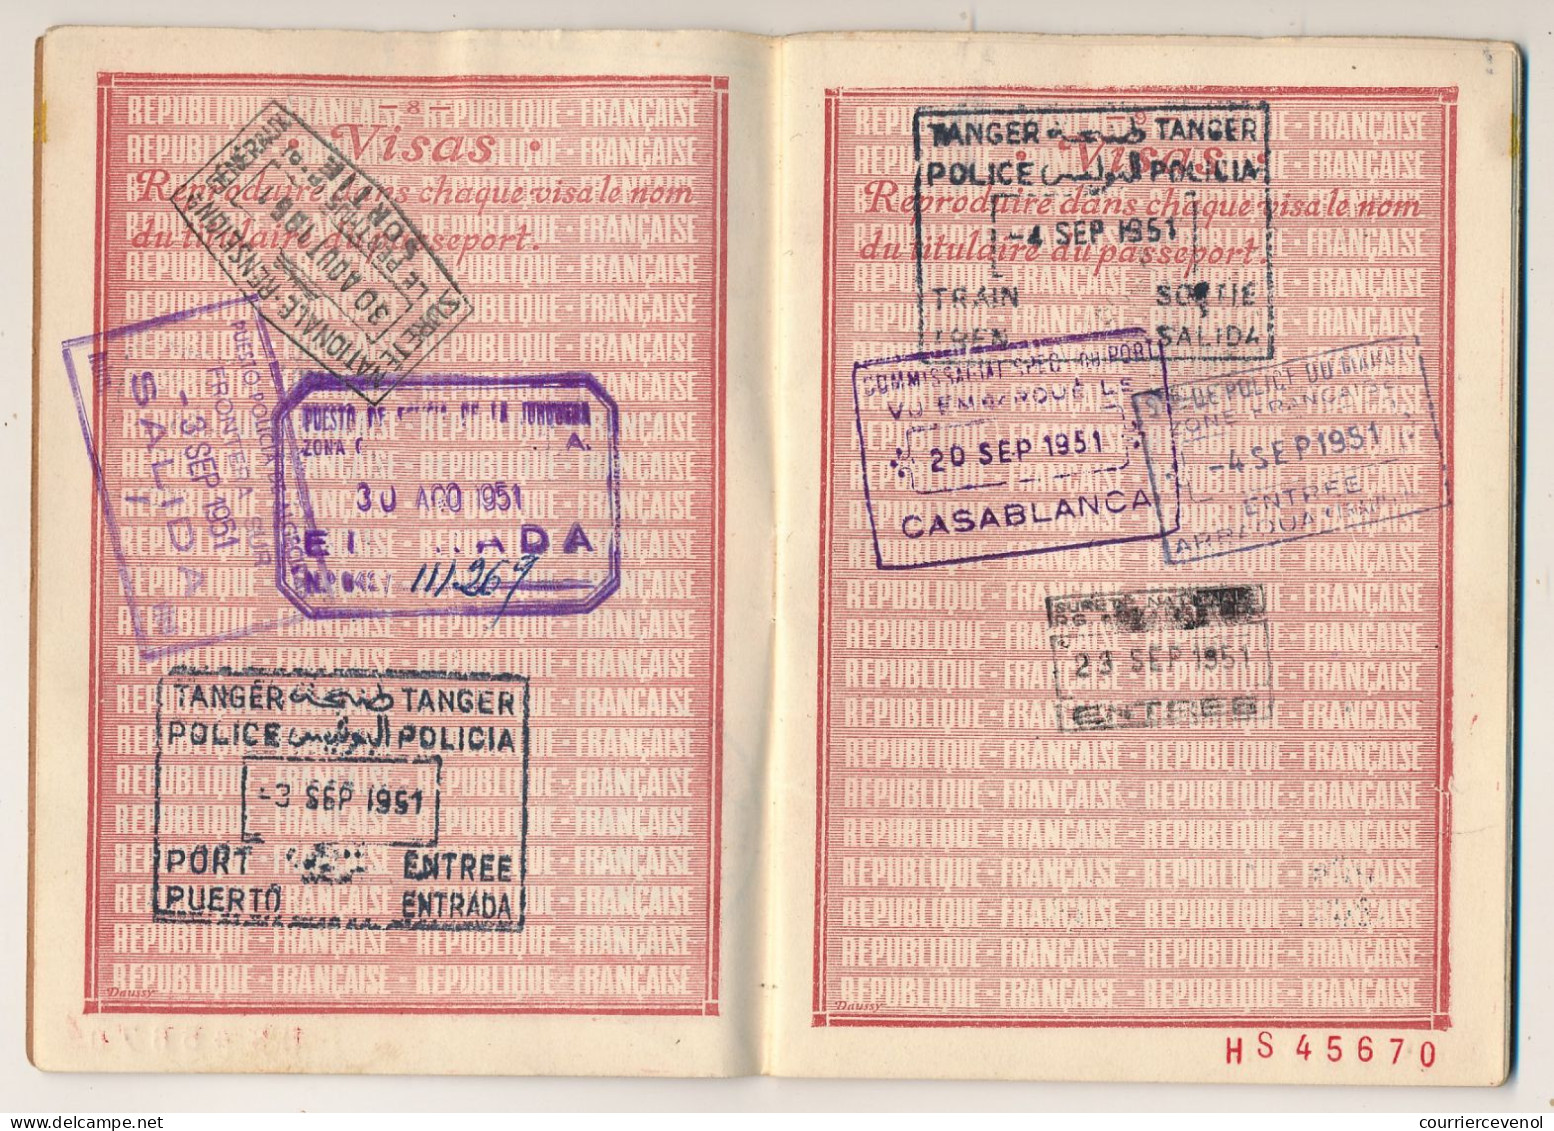 FRANCE / ESPAGNE - Passeport 700 francs Marseille 1951 + Consulat d'Espagne Marseille (fiscaux) + Visas Tanger et Maroc